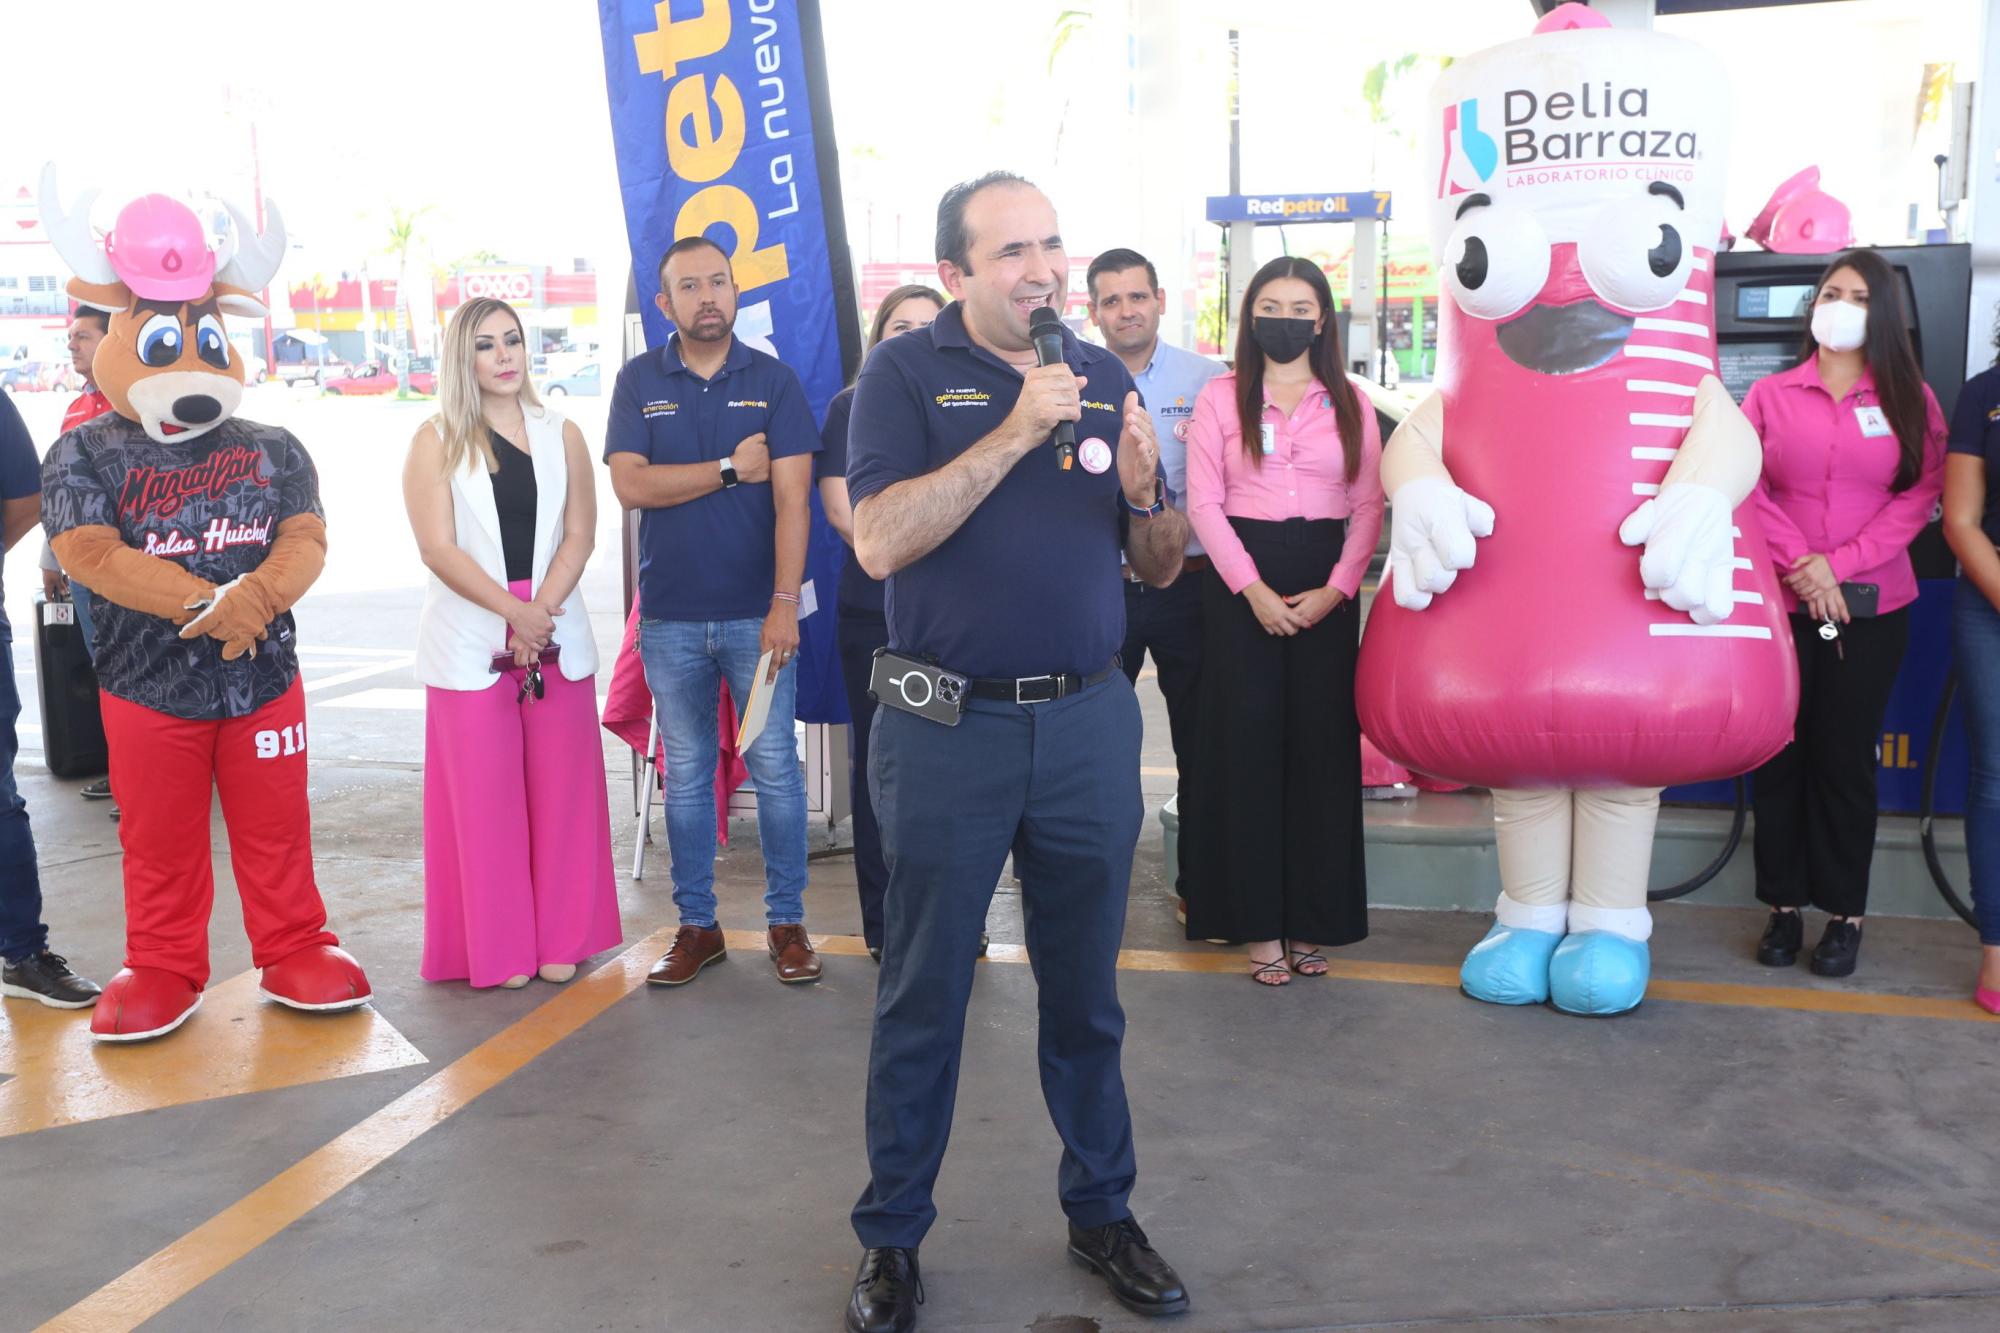 $!El director general de Grupo Petroil, Roberto Arámburo Lizárraga, dio la bienvenida a los presentes y explicó la dinámica de la campaña.